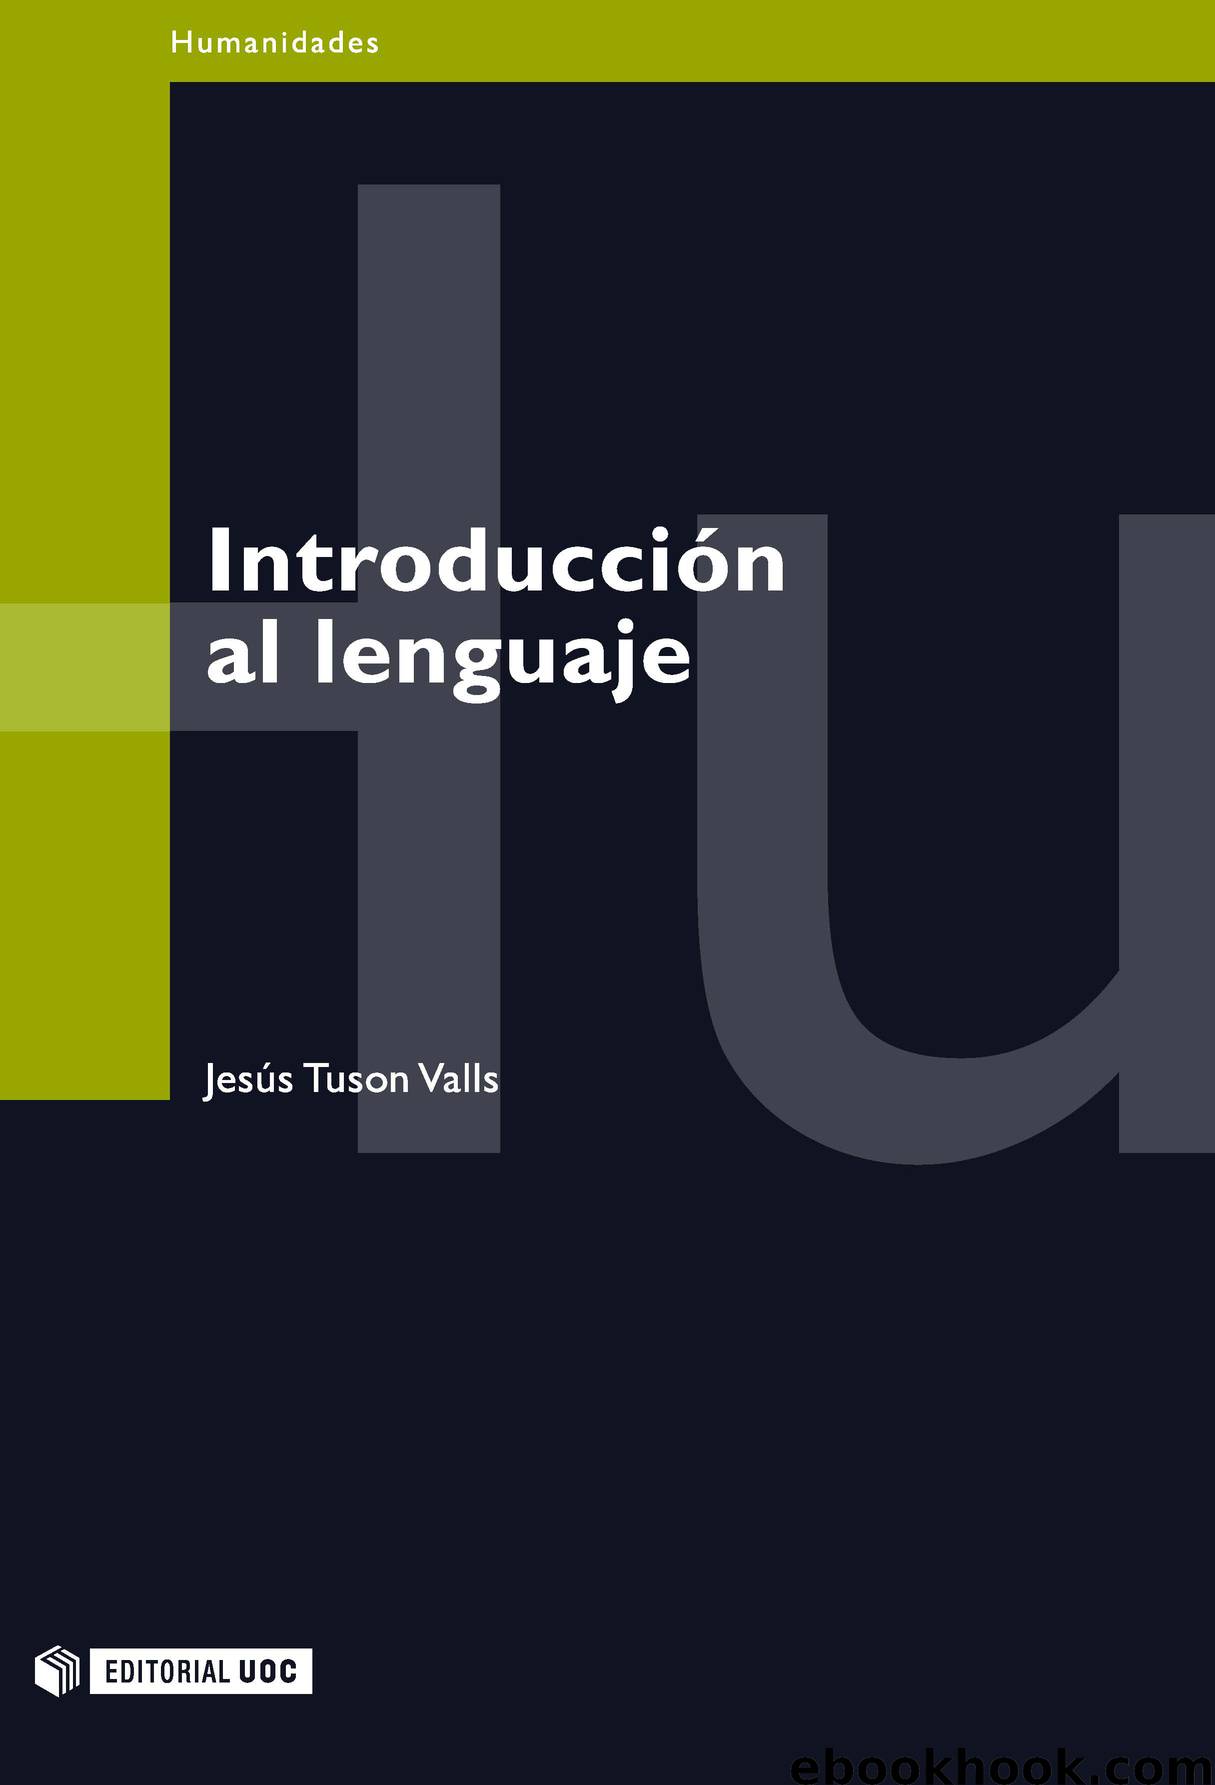 Introducción al lenguaje by Jesús Tusón Valls